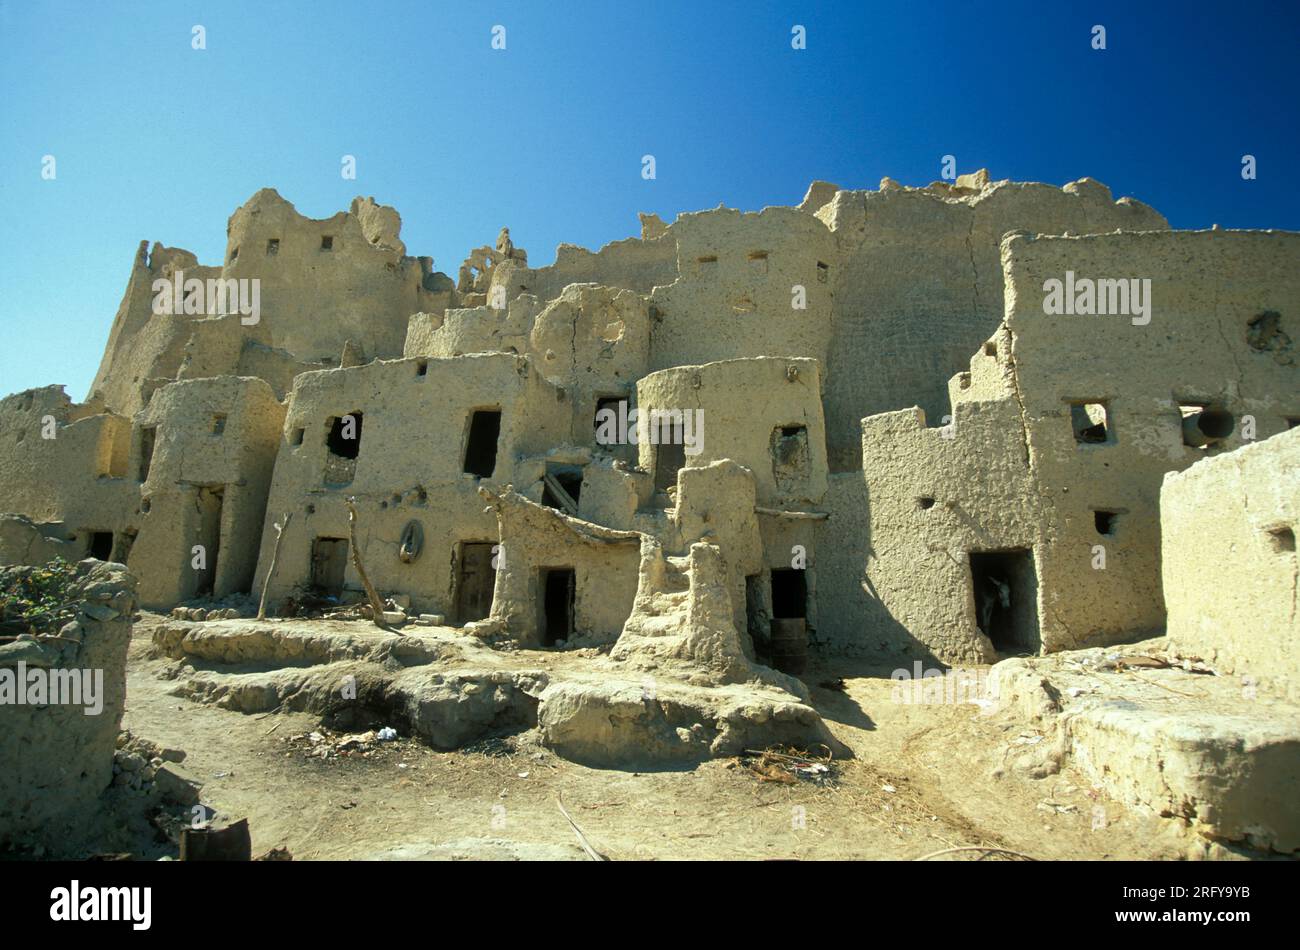 L'antico villaggio di Siwa nel deserto libico o orientale dell'Egitto in Nord Africa. Egitto, Siwa, marzo 2000 Foto Stock